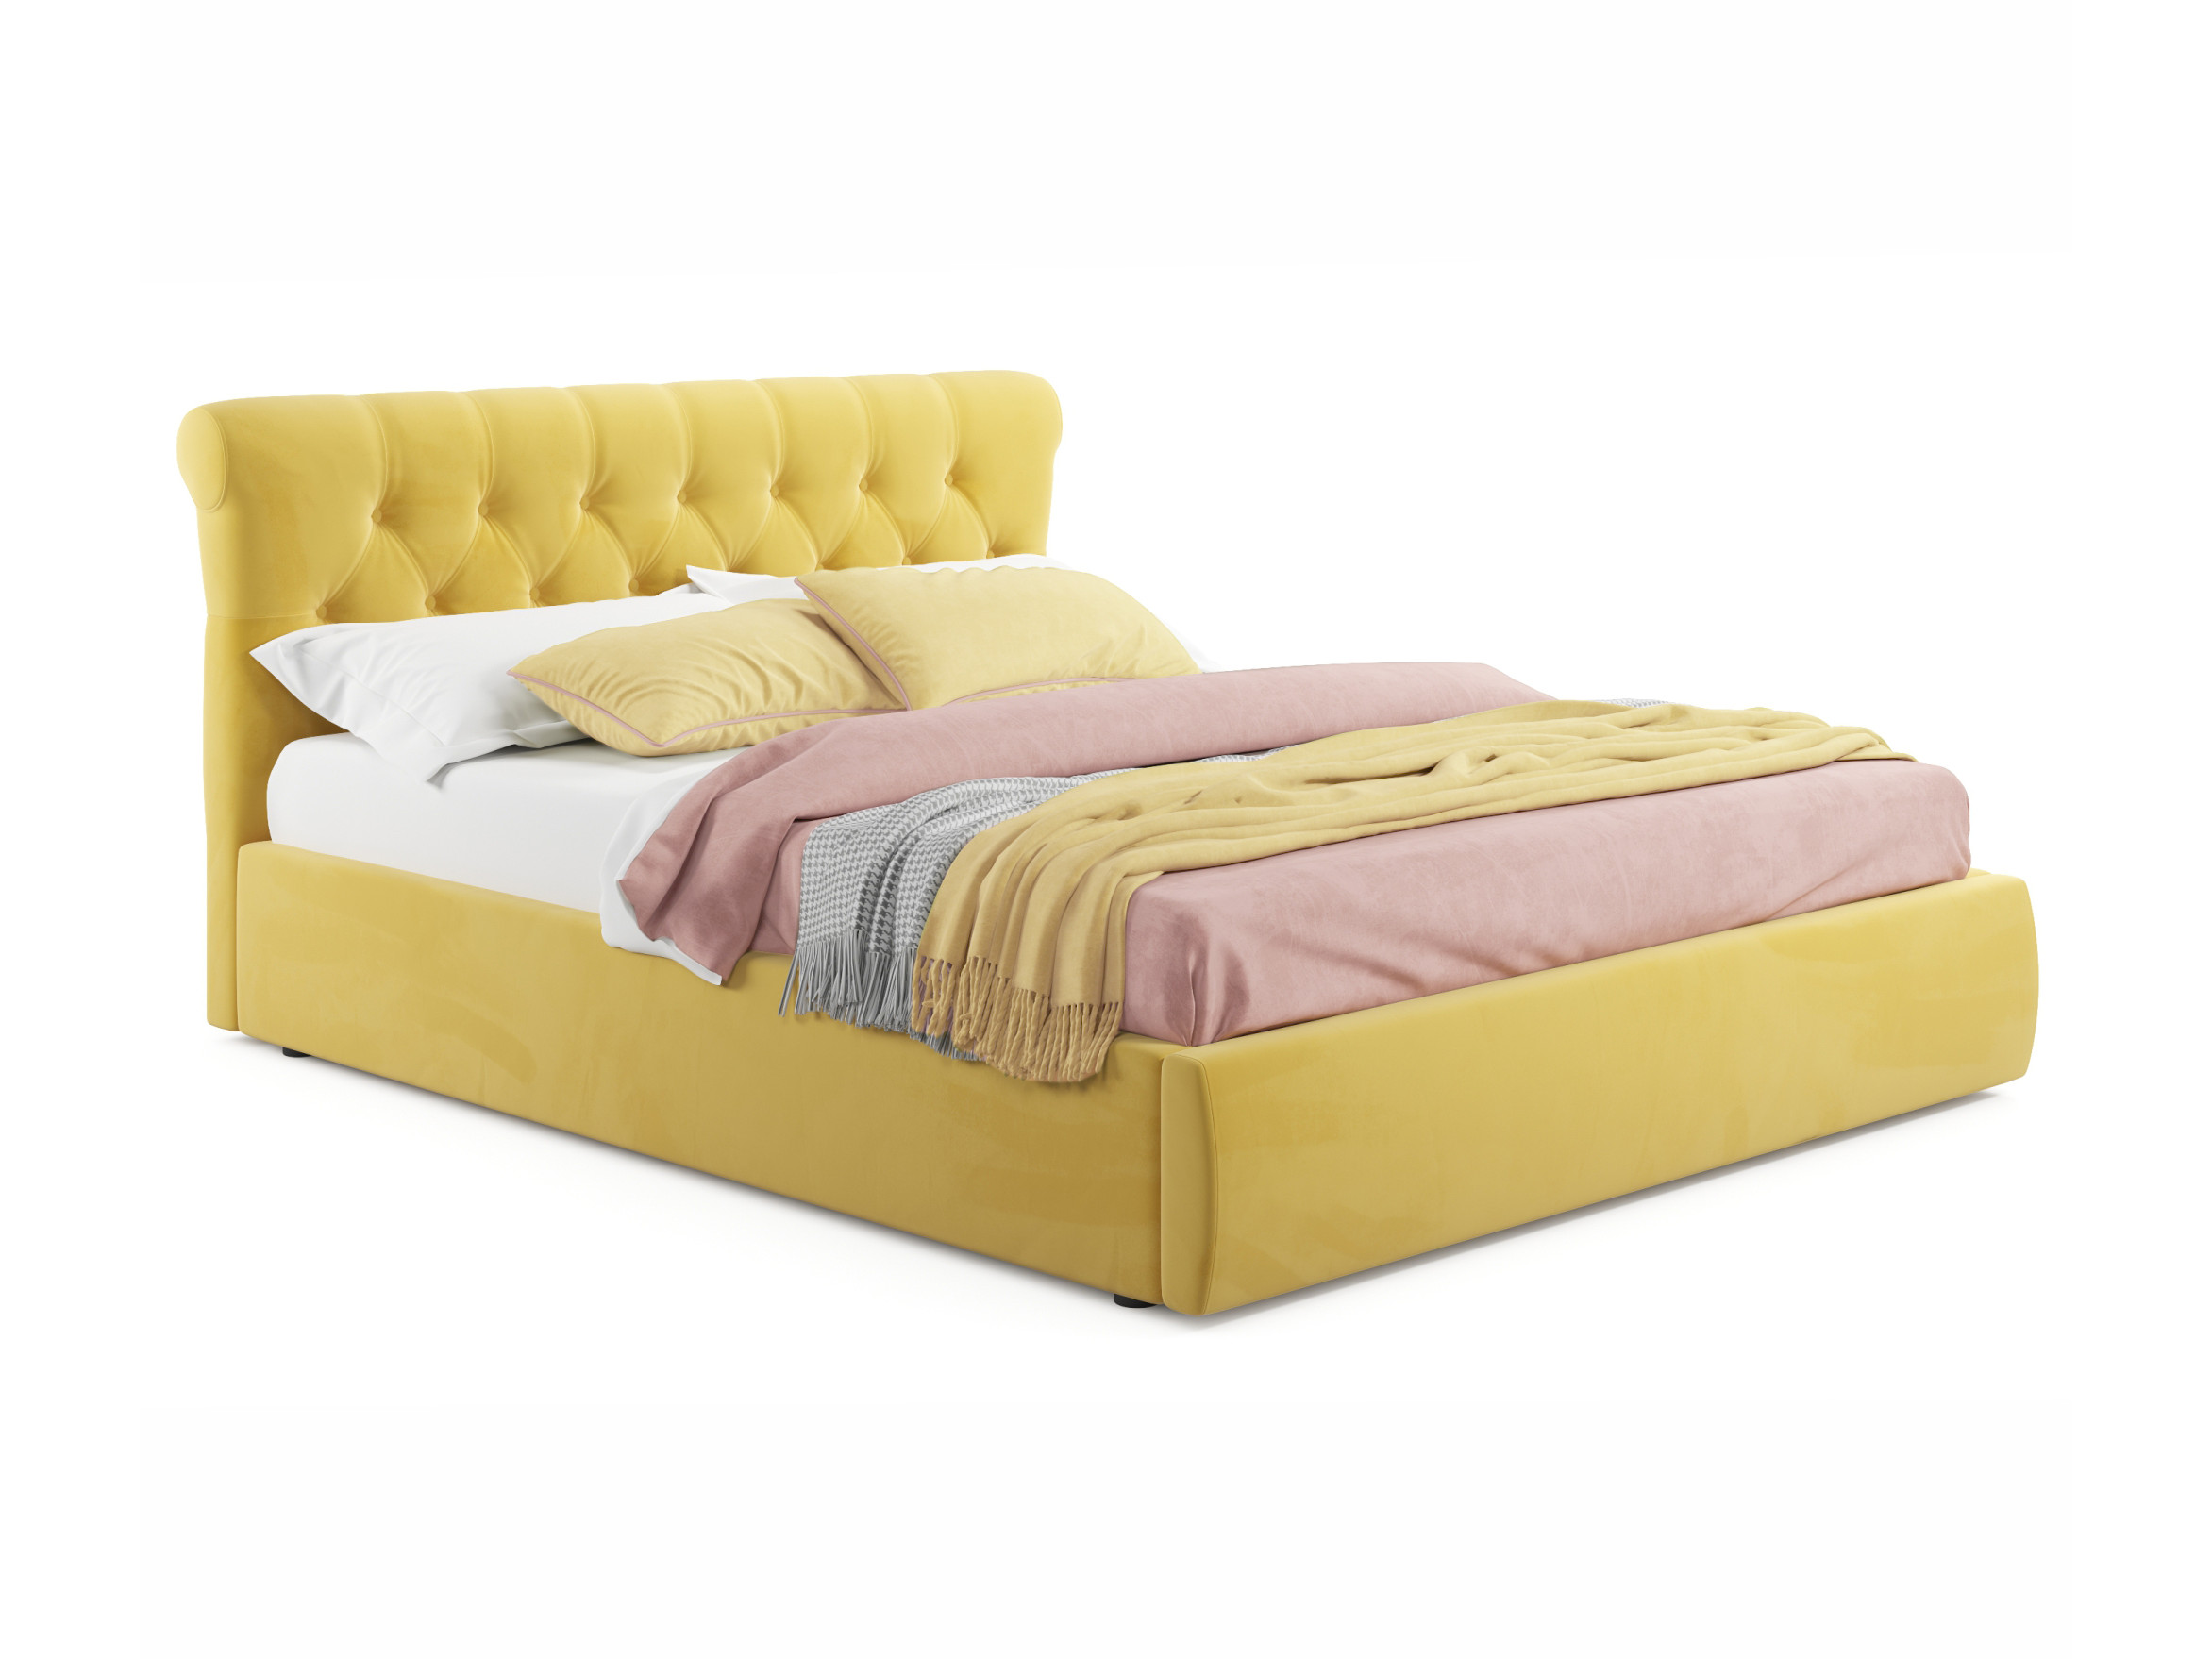 Мягкая кровать Ameli 1600 желтая с подъемным механизмом желтый, Желтый, Велюр, ДСП мягкая кровать ameli 1600 синяя с подъемным механизмом синий синий велюр дсп